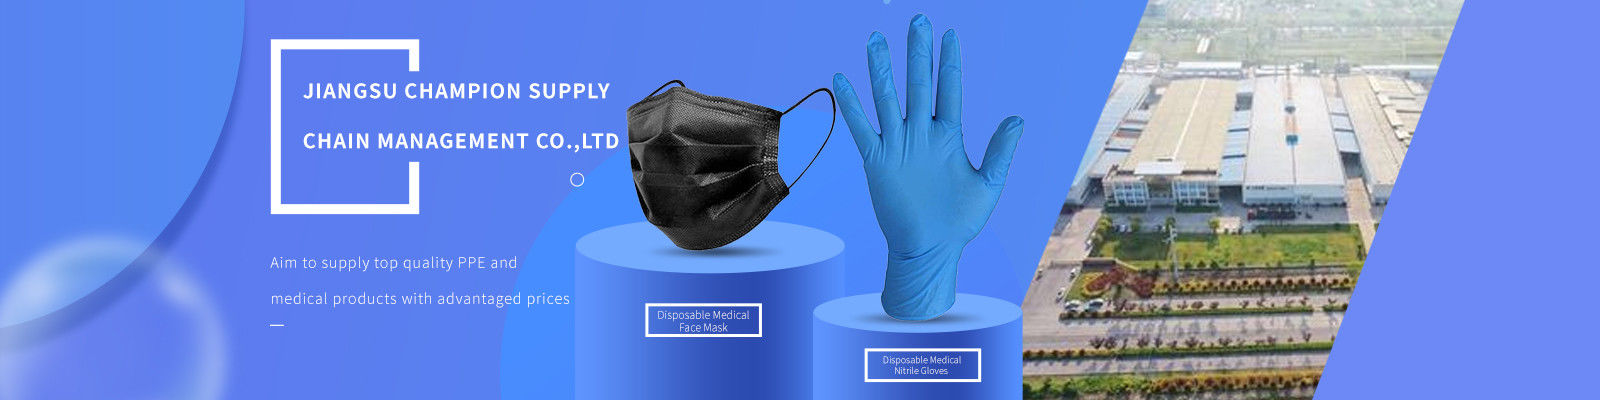 Disposable Medical Nitrile Gloves